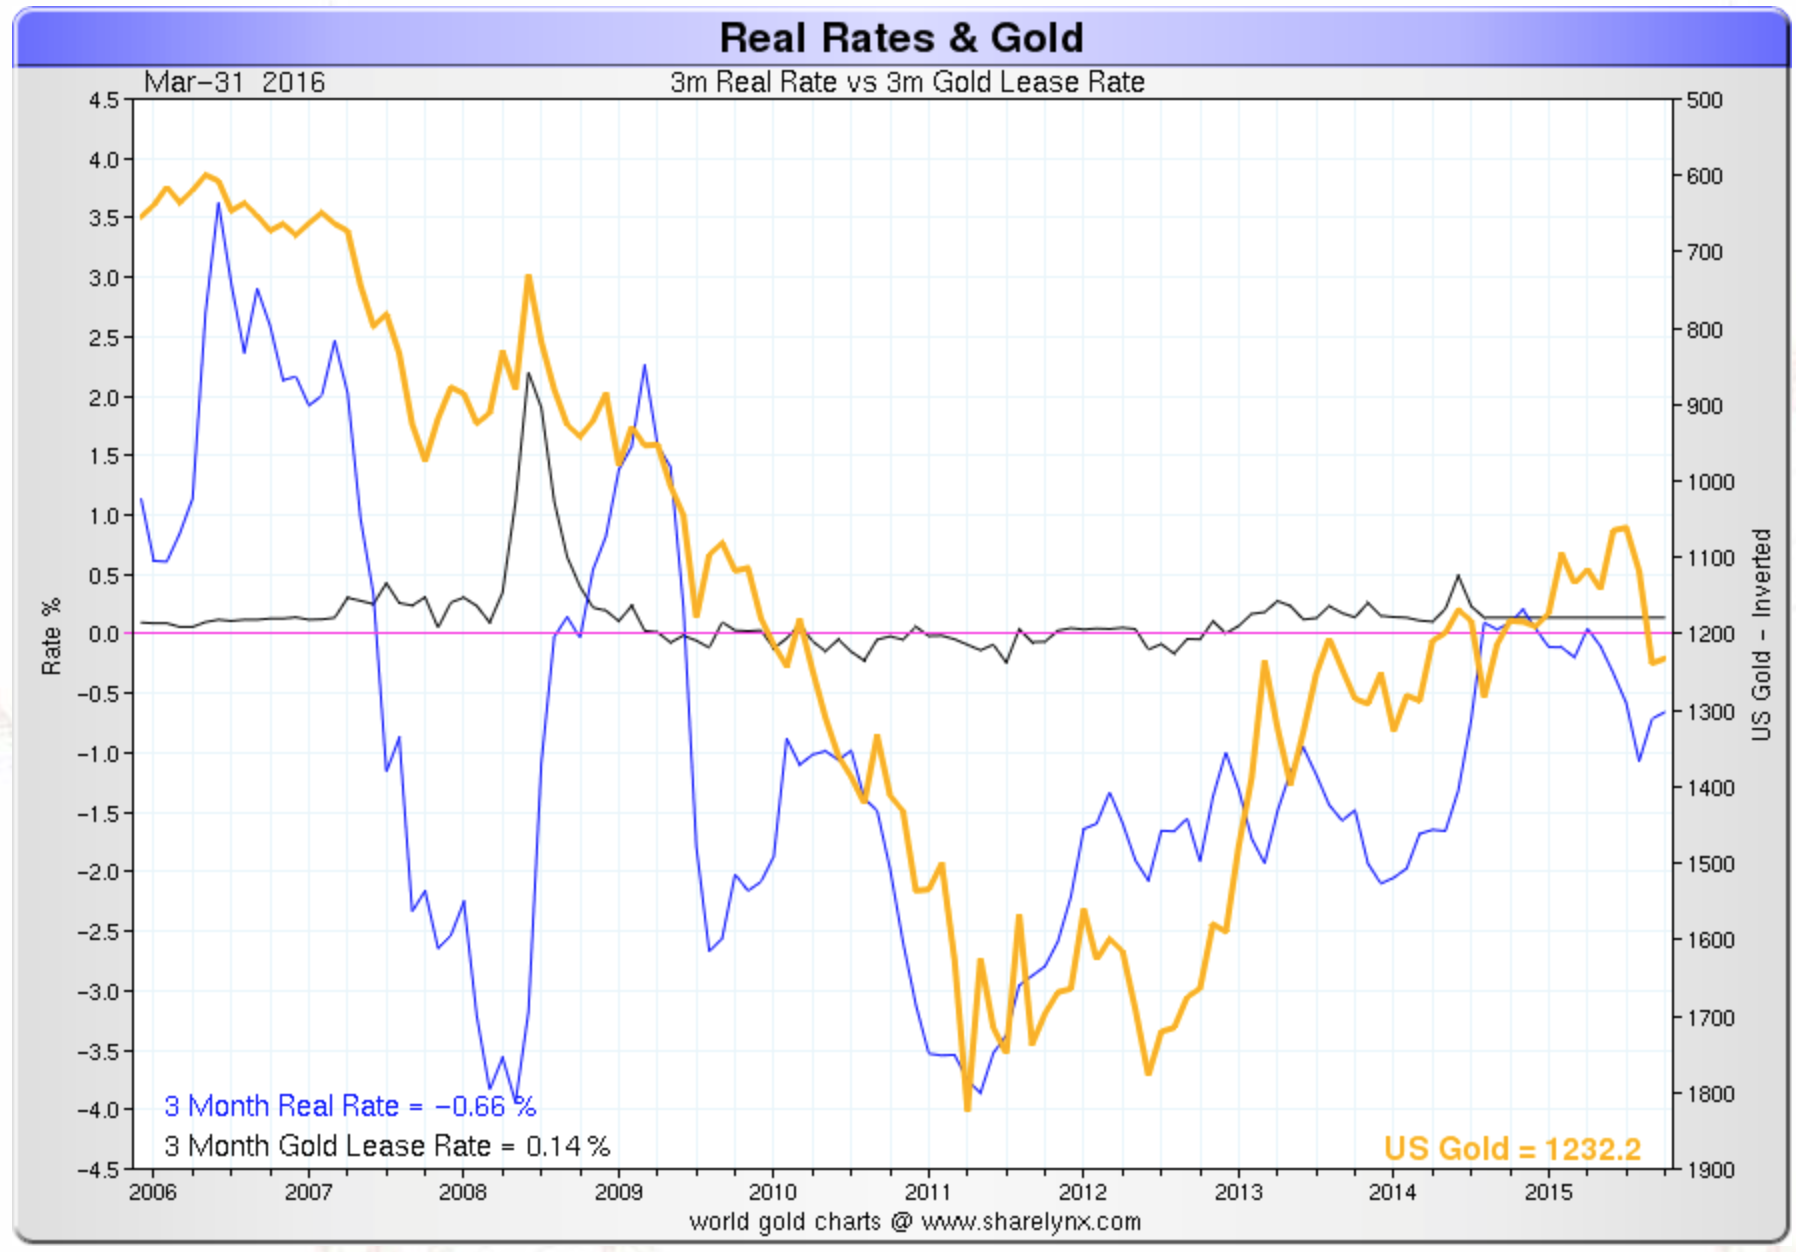 Taux réels et l’or depuis 2006